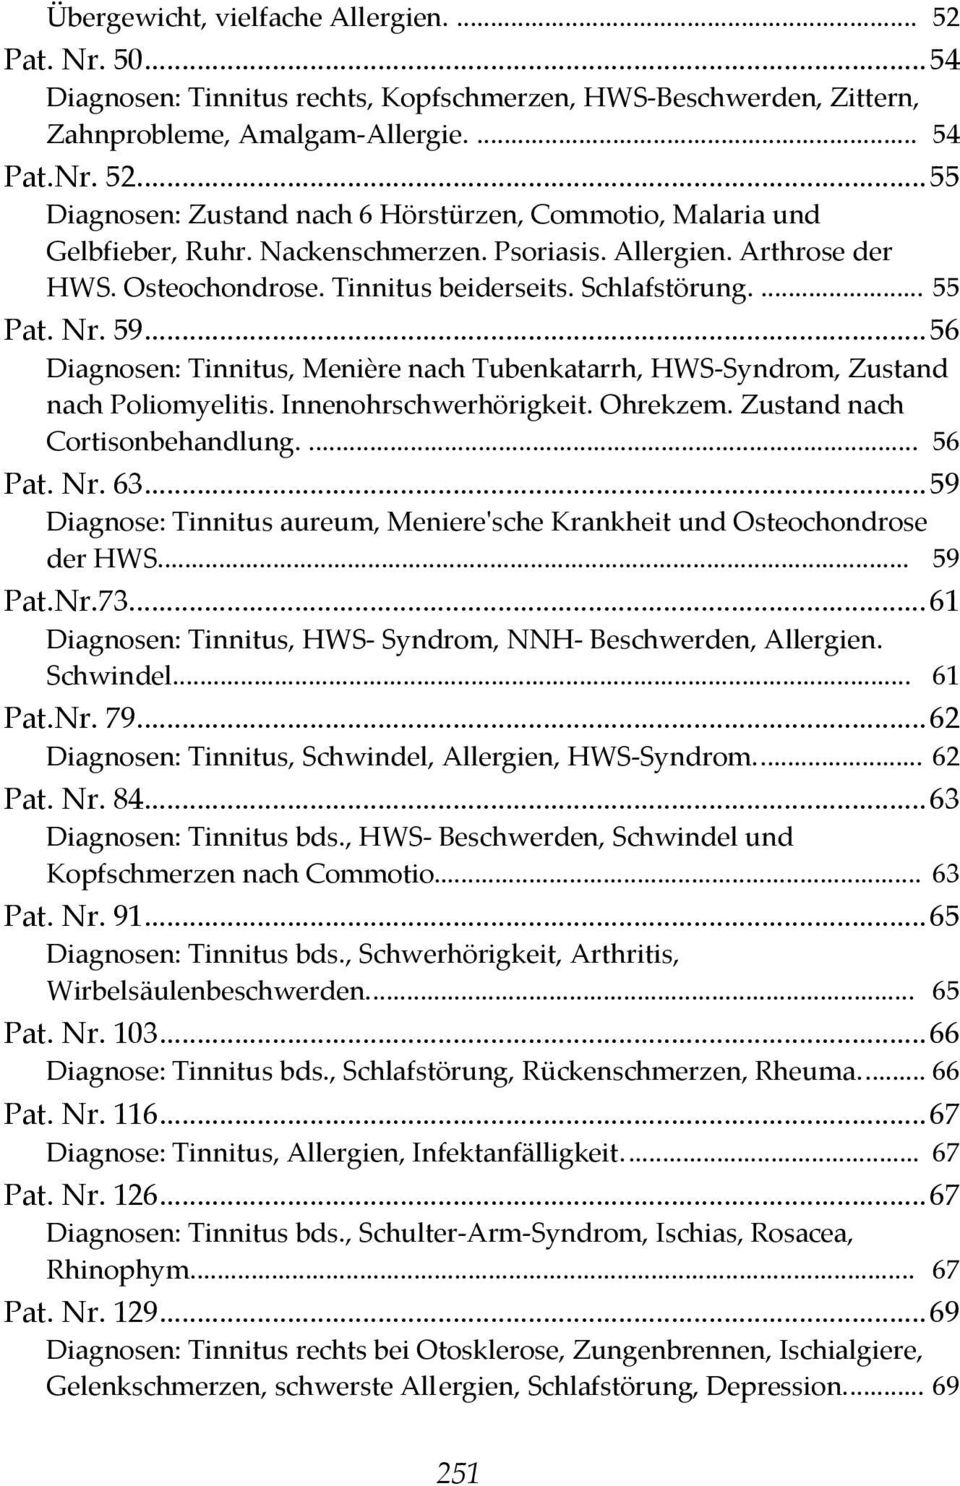 ..56 Diagnosen: Tinnitus, Menière nach Tubenkatarrh, HWS-Syndrom, Zustand nach Poliomyelitis. Innenohrschwerhörigkeit. Ohrekzem. Zustand nach Cortisonbehandlung.... 56 Pat. Nr. 63.